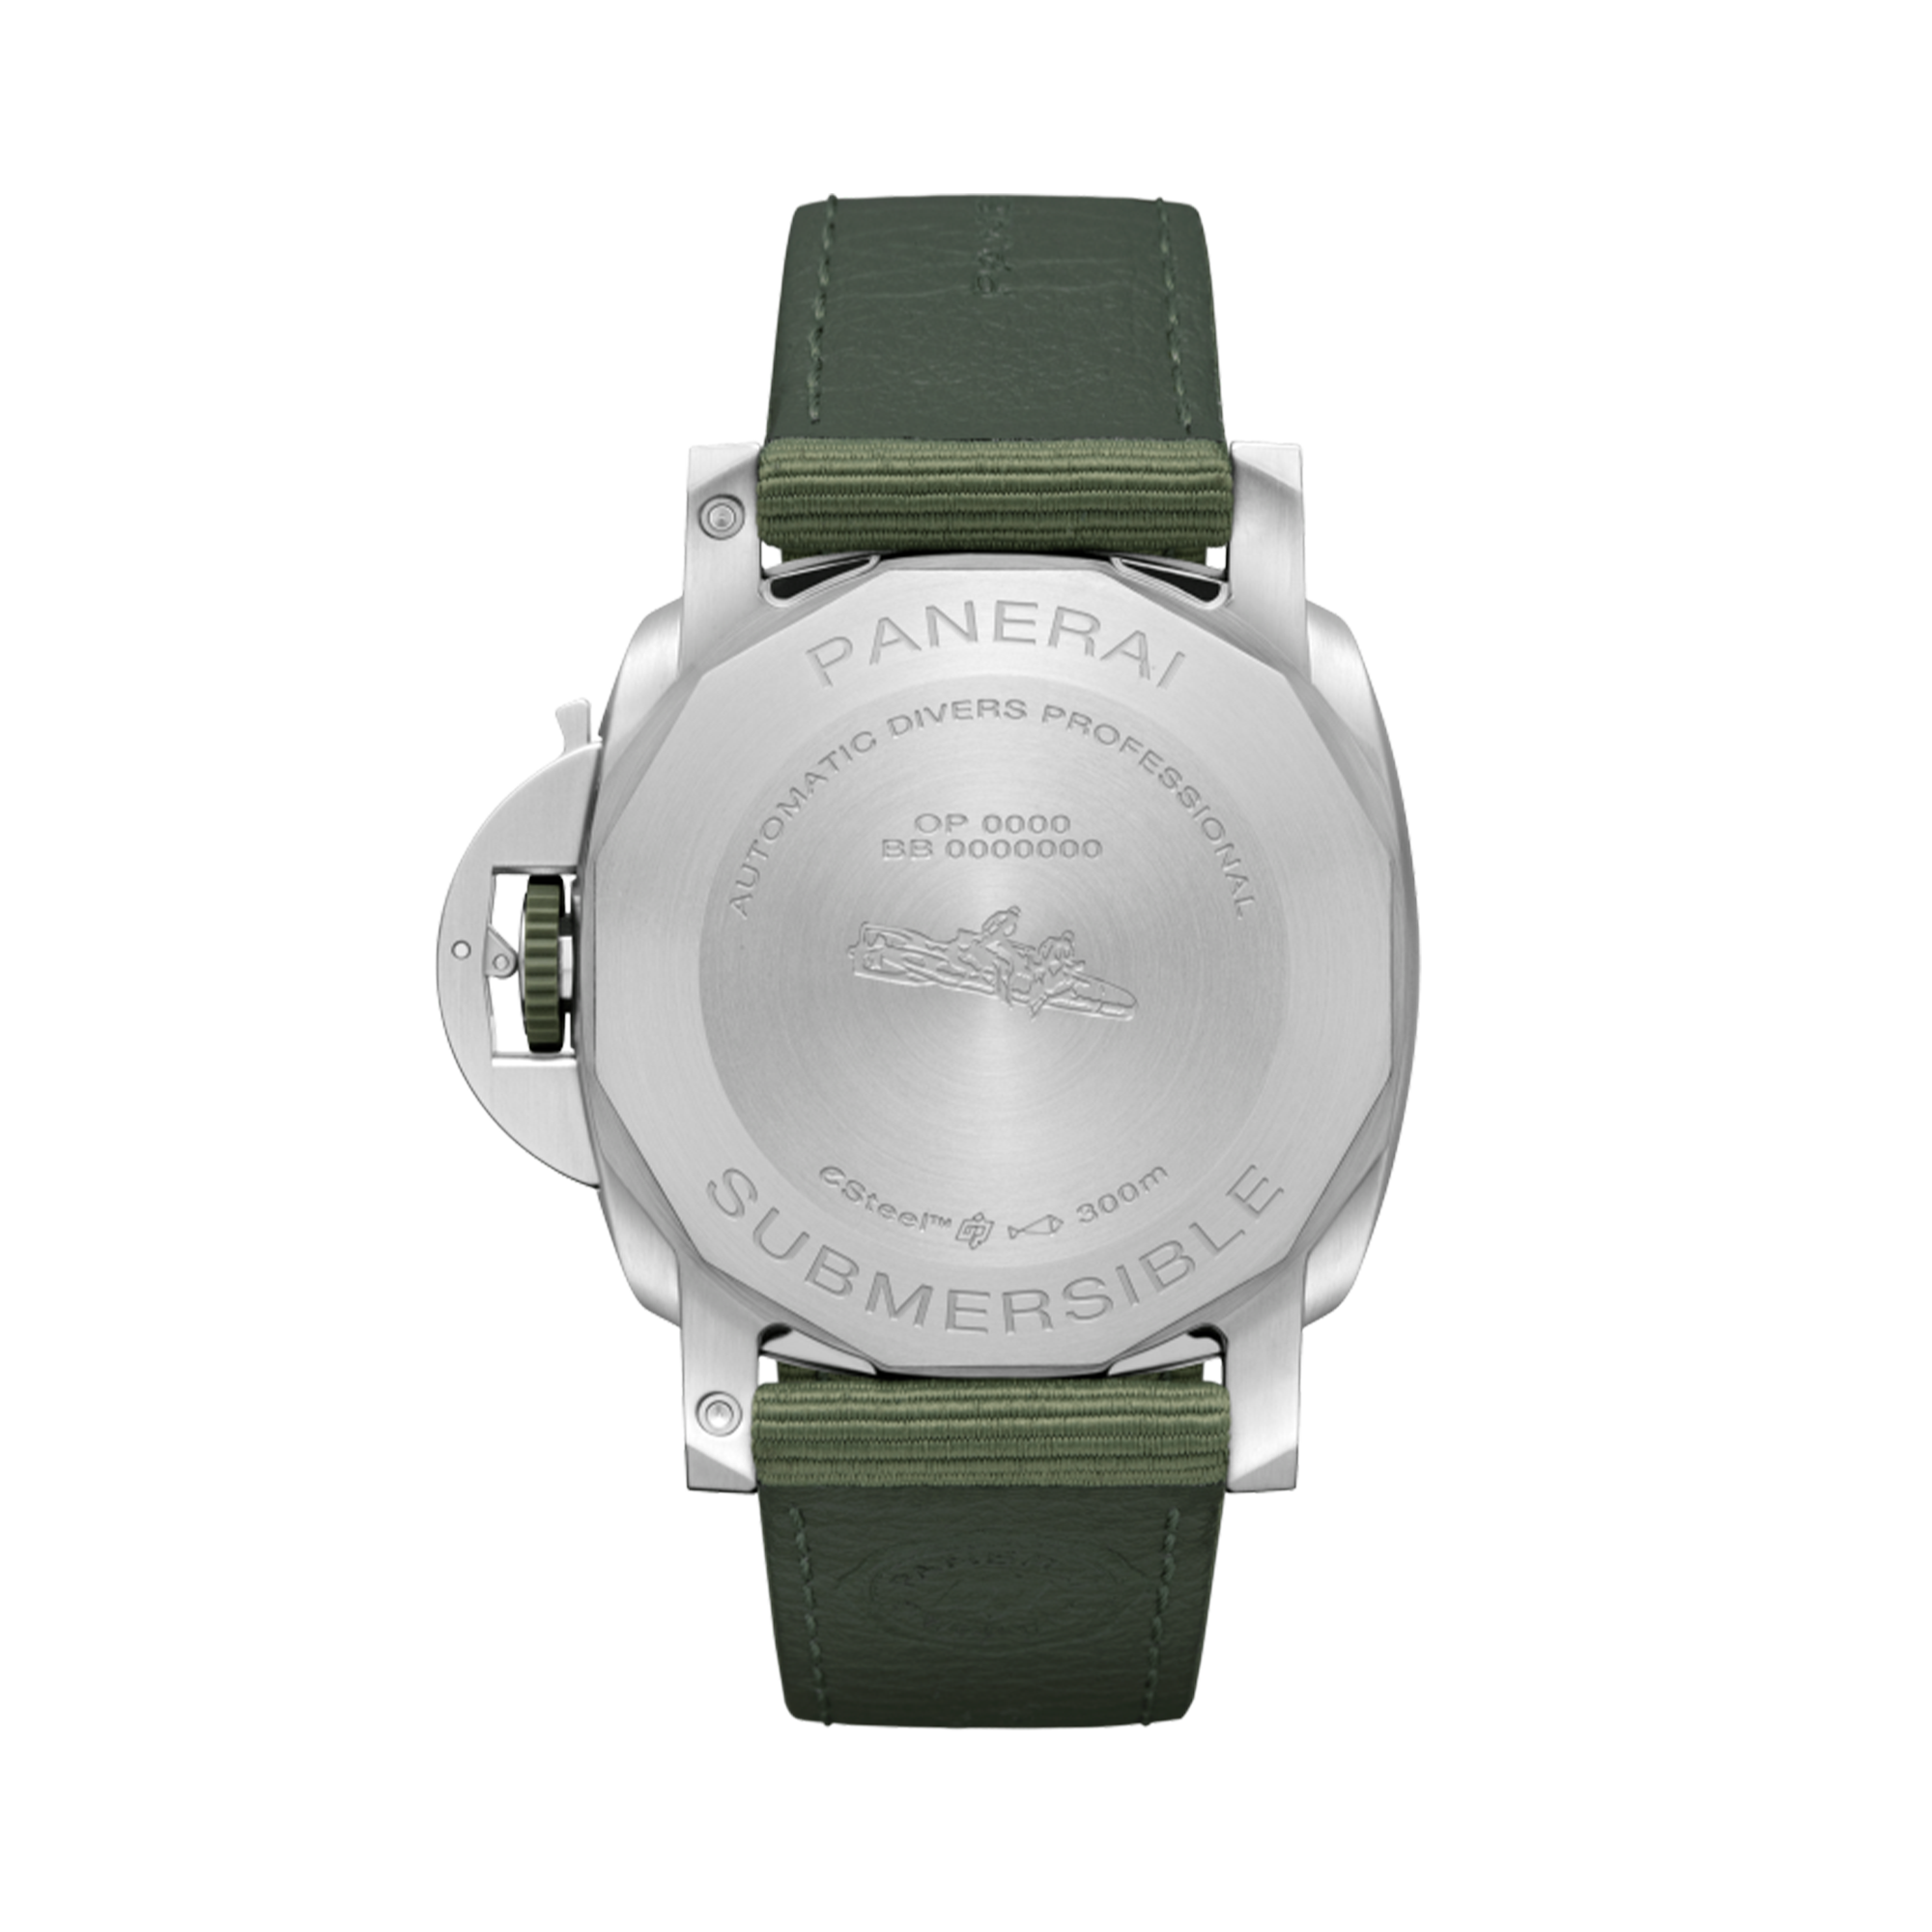 Panerai Submersible QuarantaQuattro ESteel™ Verde Smeraldo 44mm, Green Dial, Baton Numerals_2